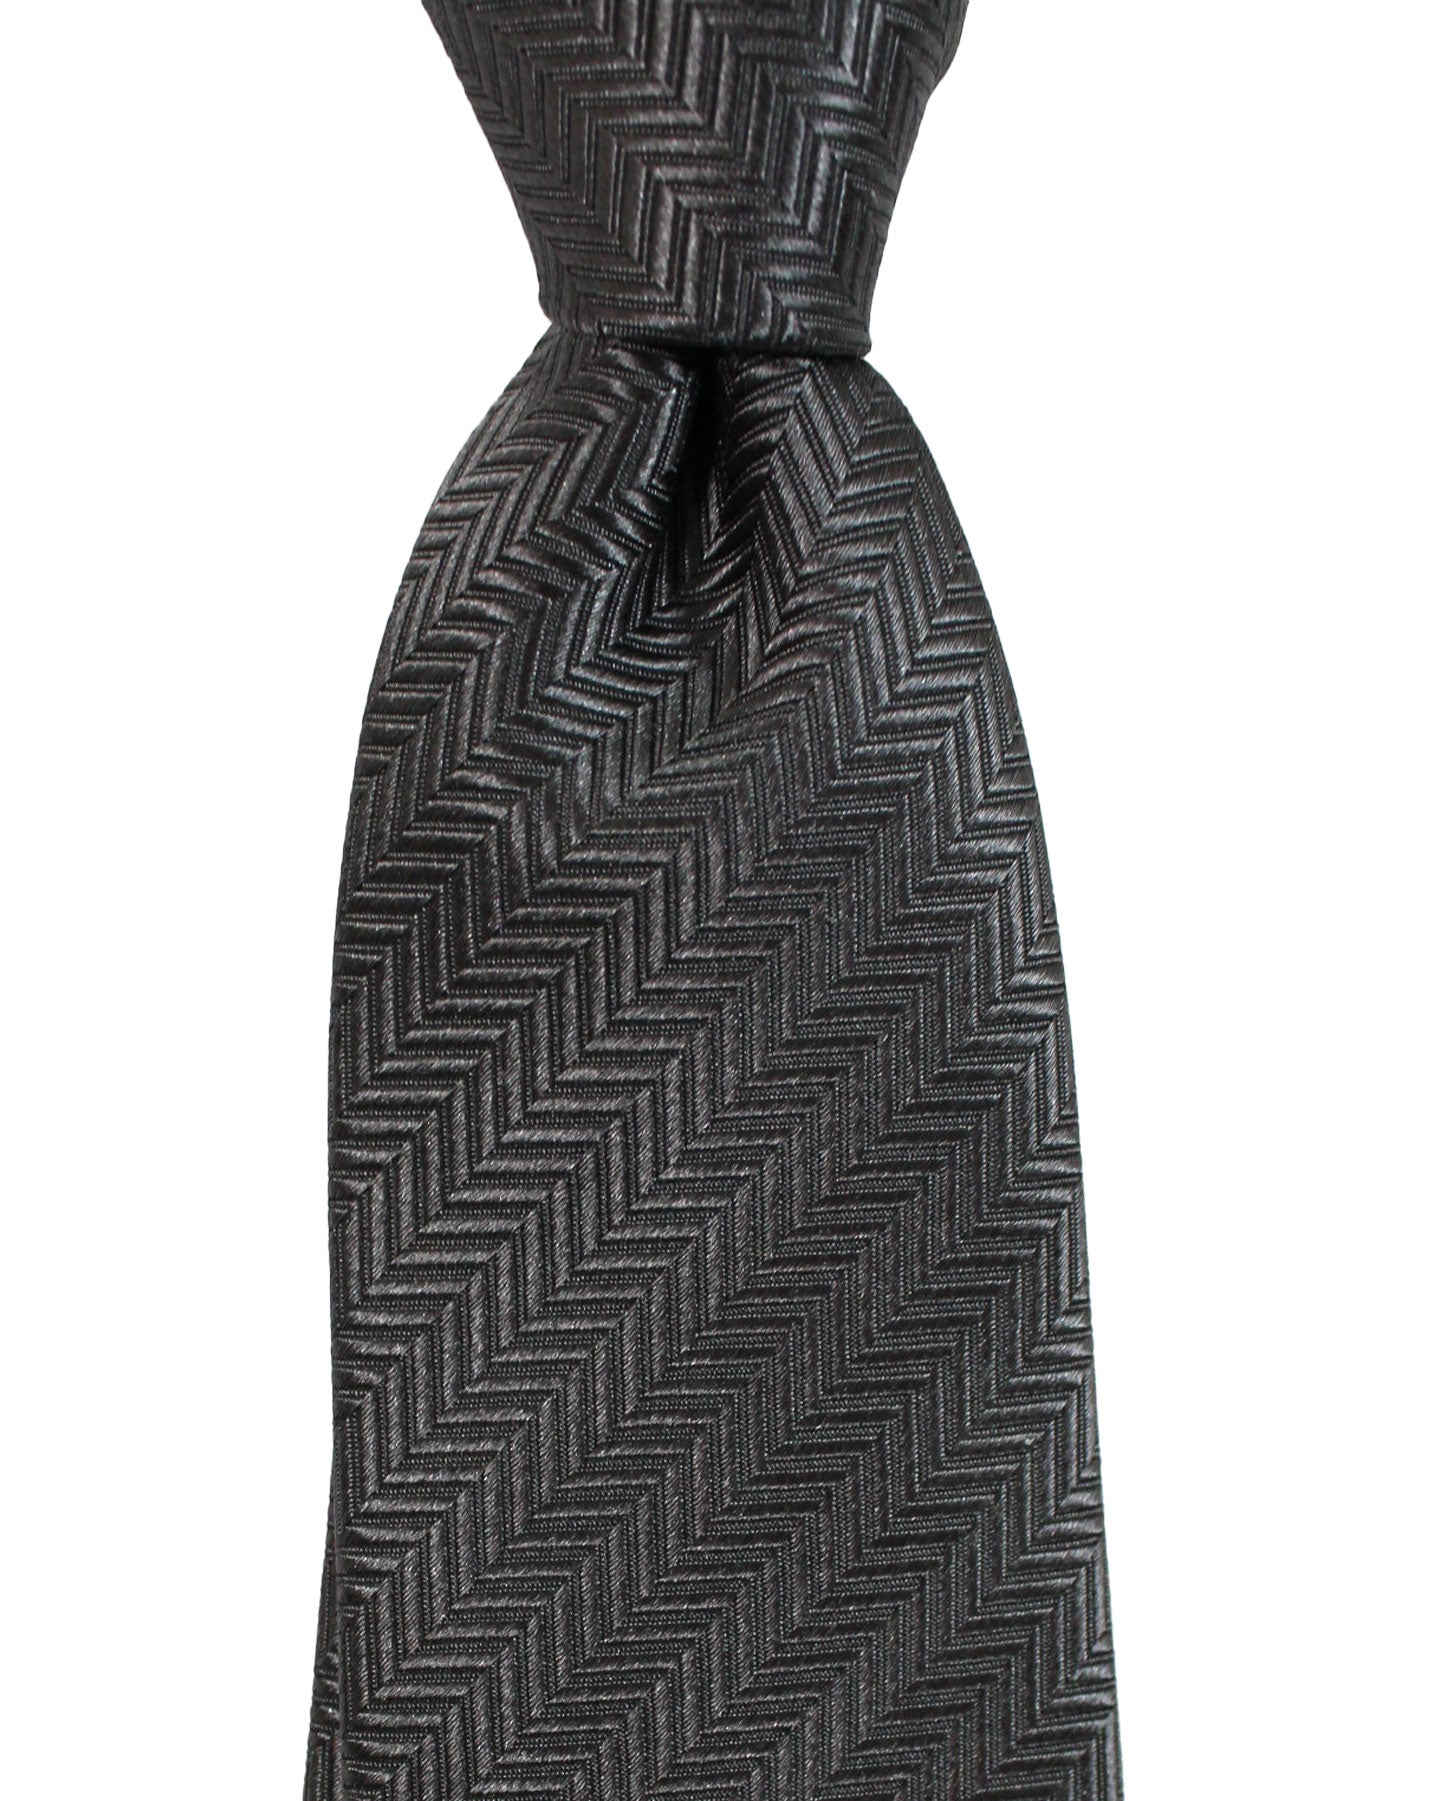 Armani Silk Tie Charcoal Gray Herringbone Armani Collezioni